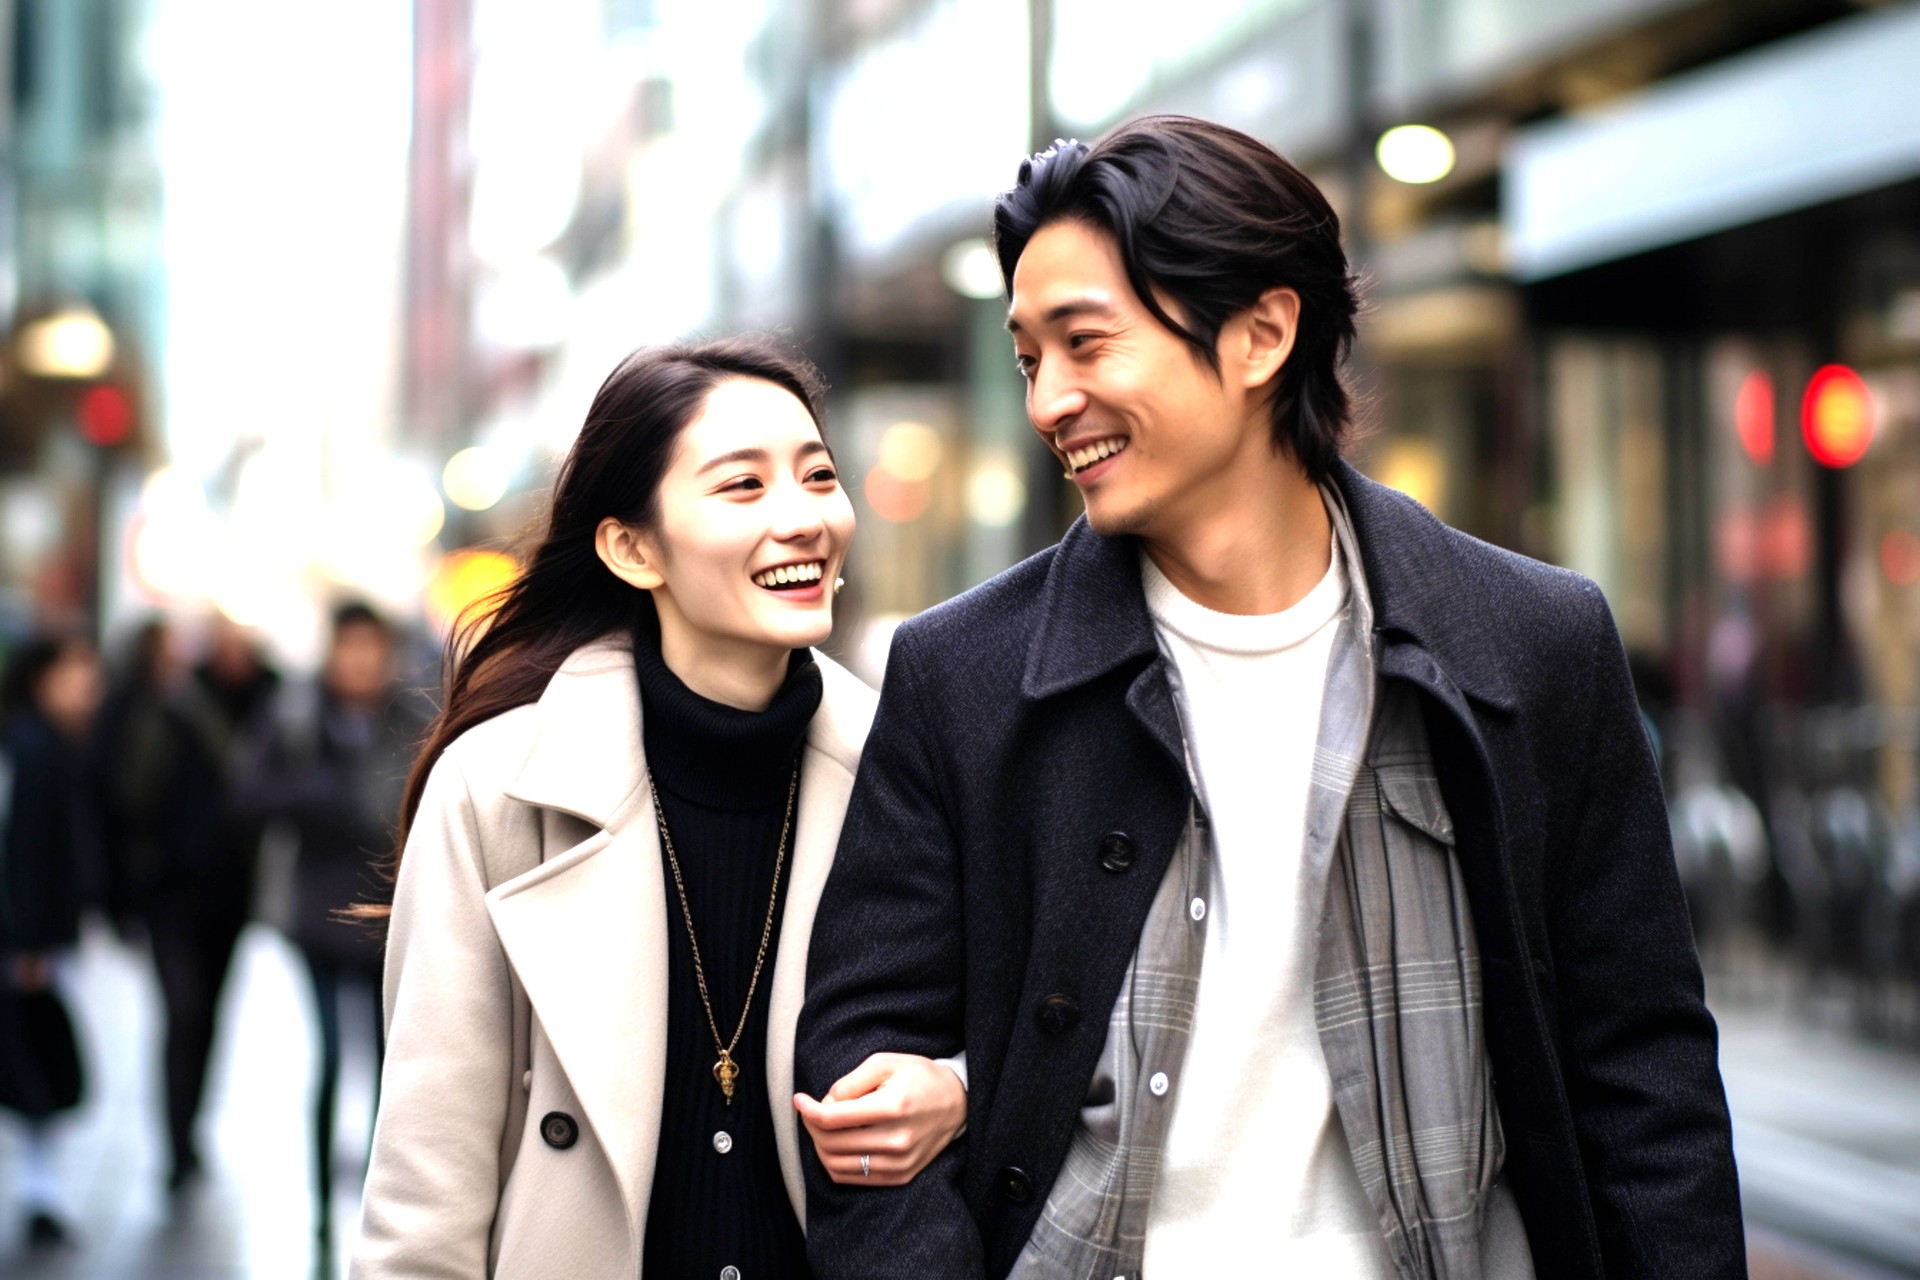 【札幌で東カレデート！出会いと恋活をサポートするアプリの感想とデート相手について】